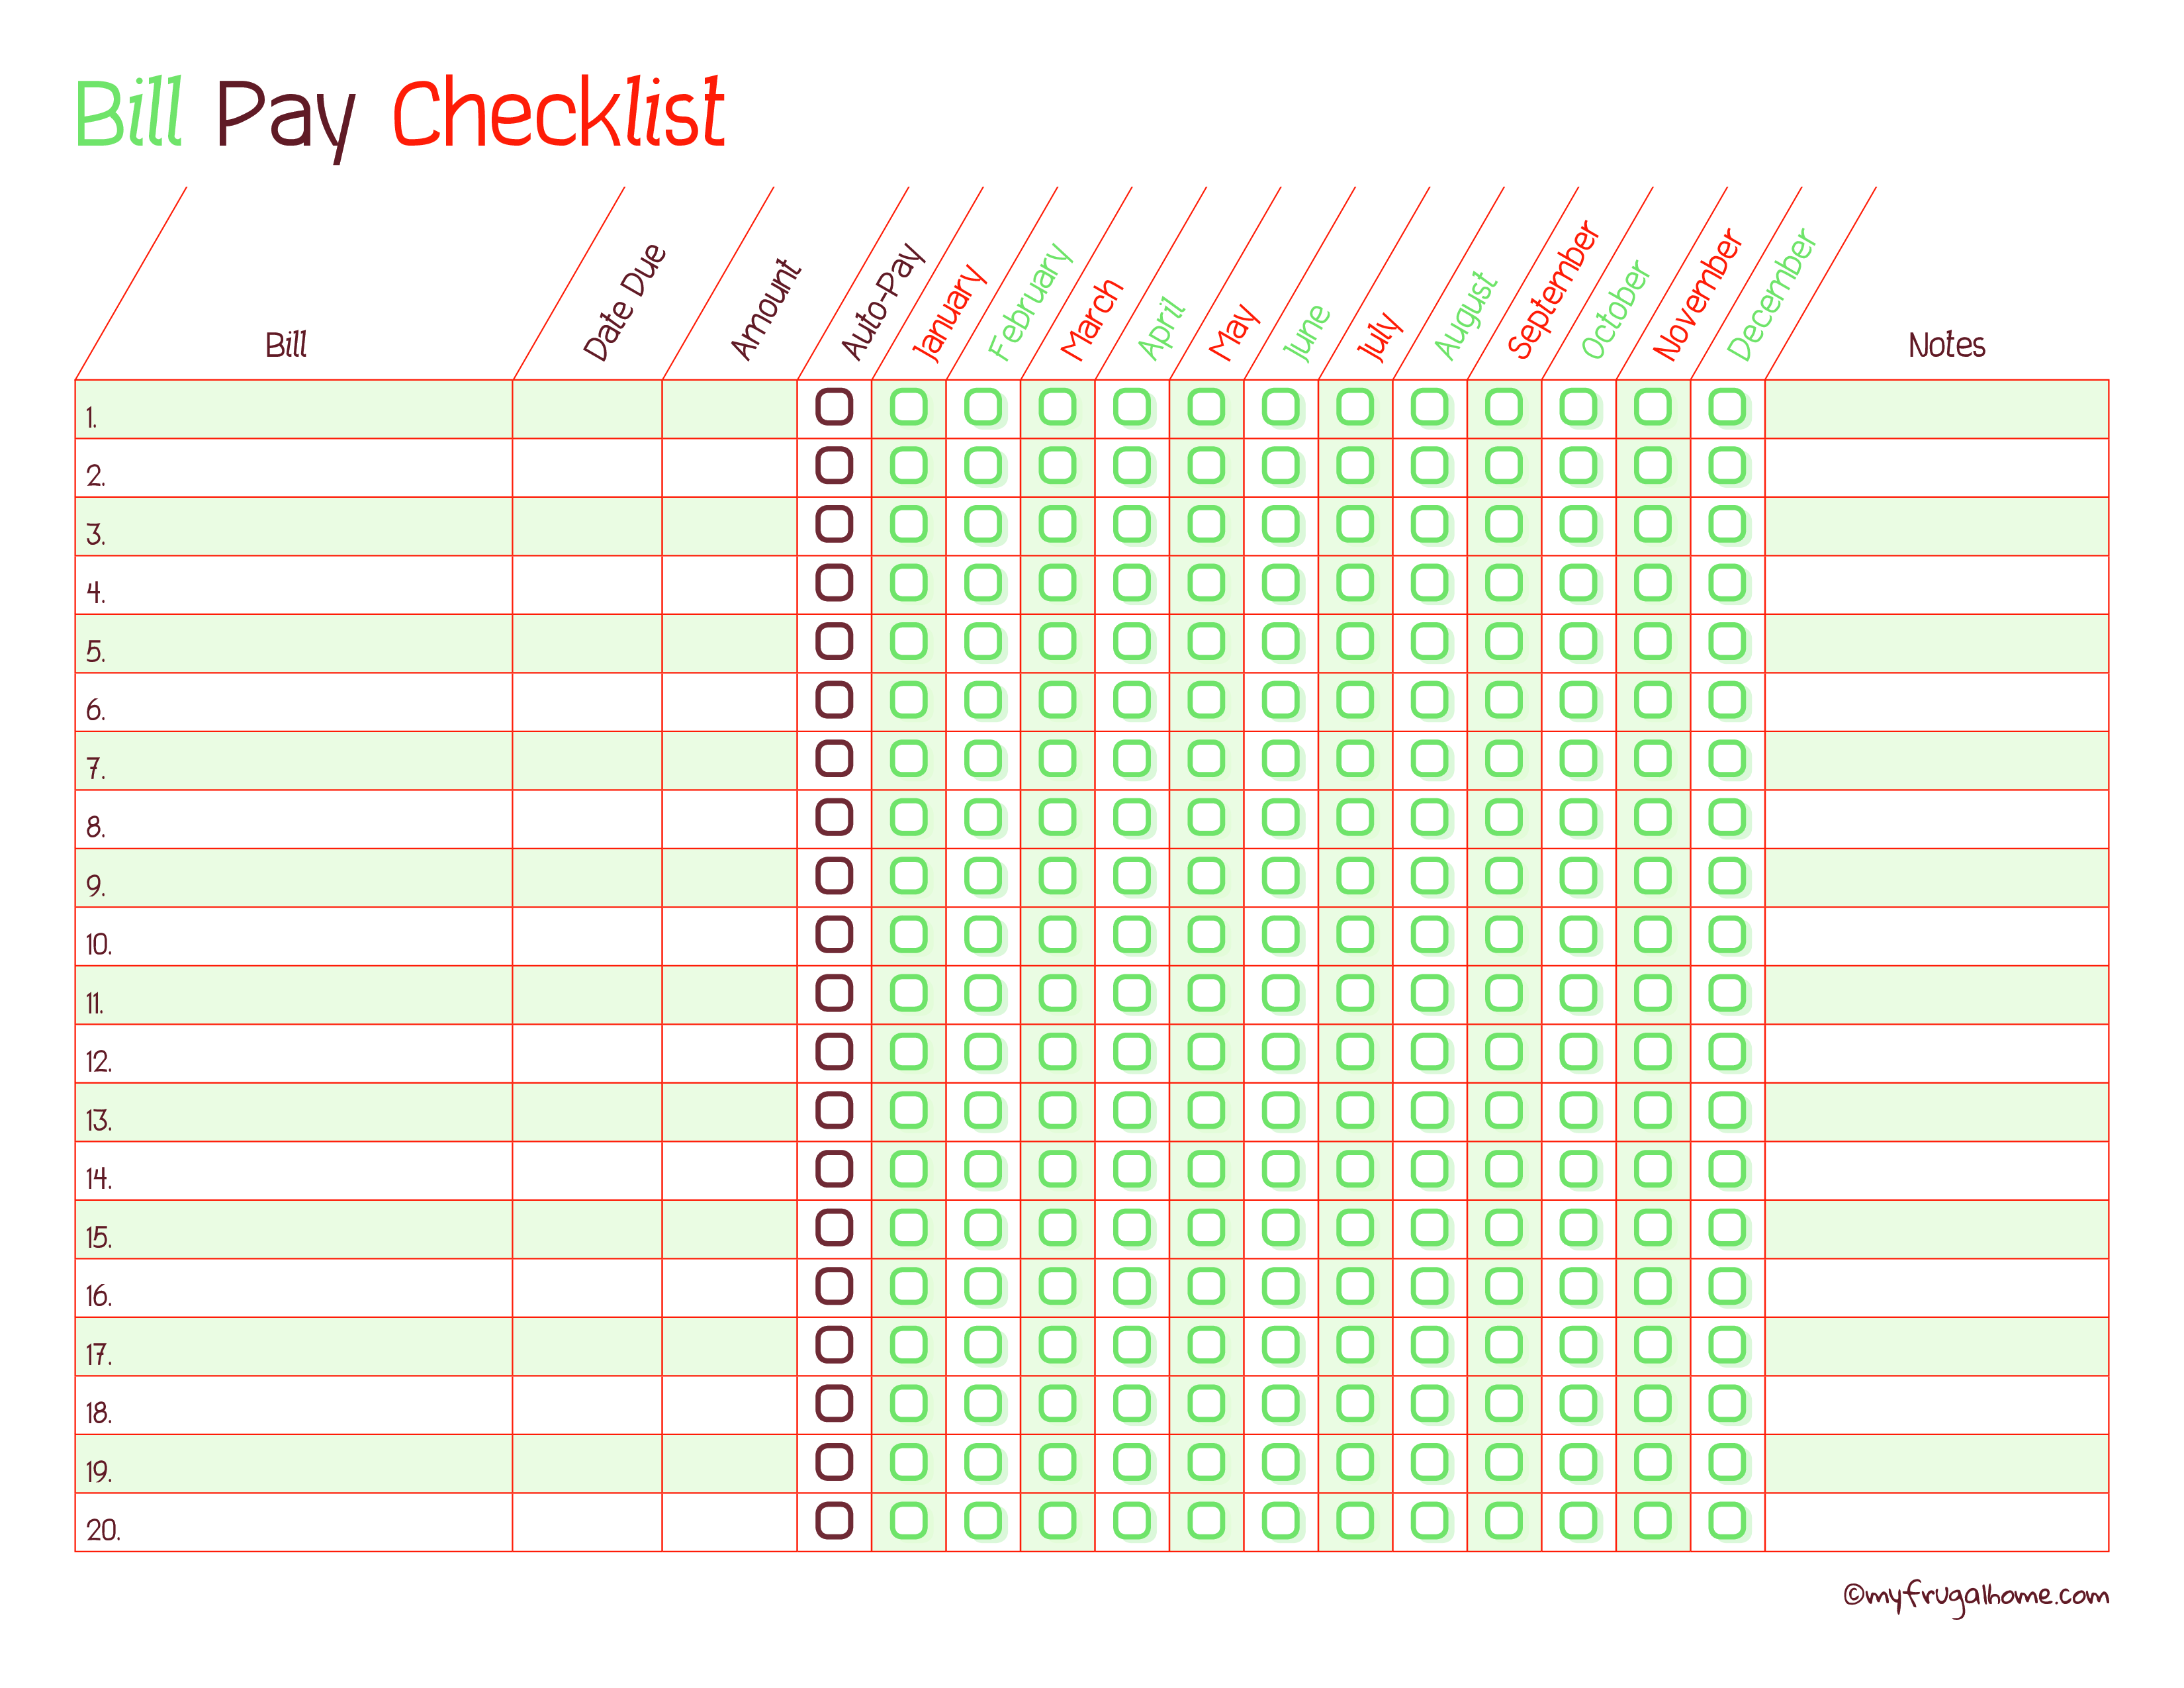 Bill Payment Checklist 模板